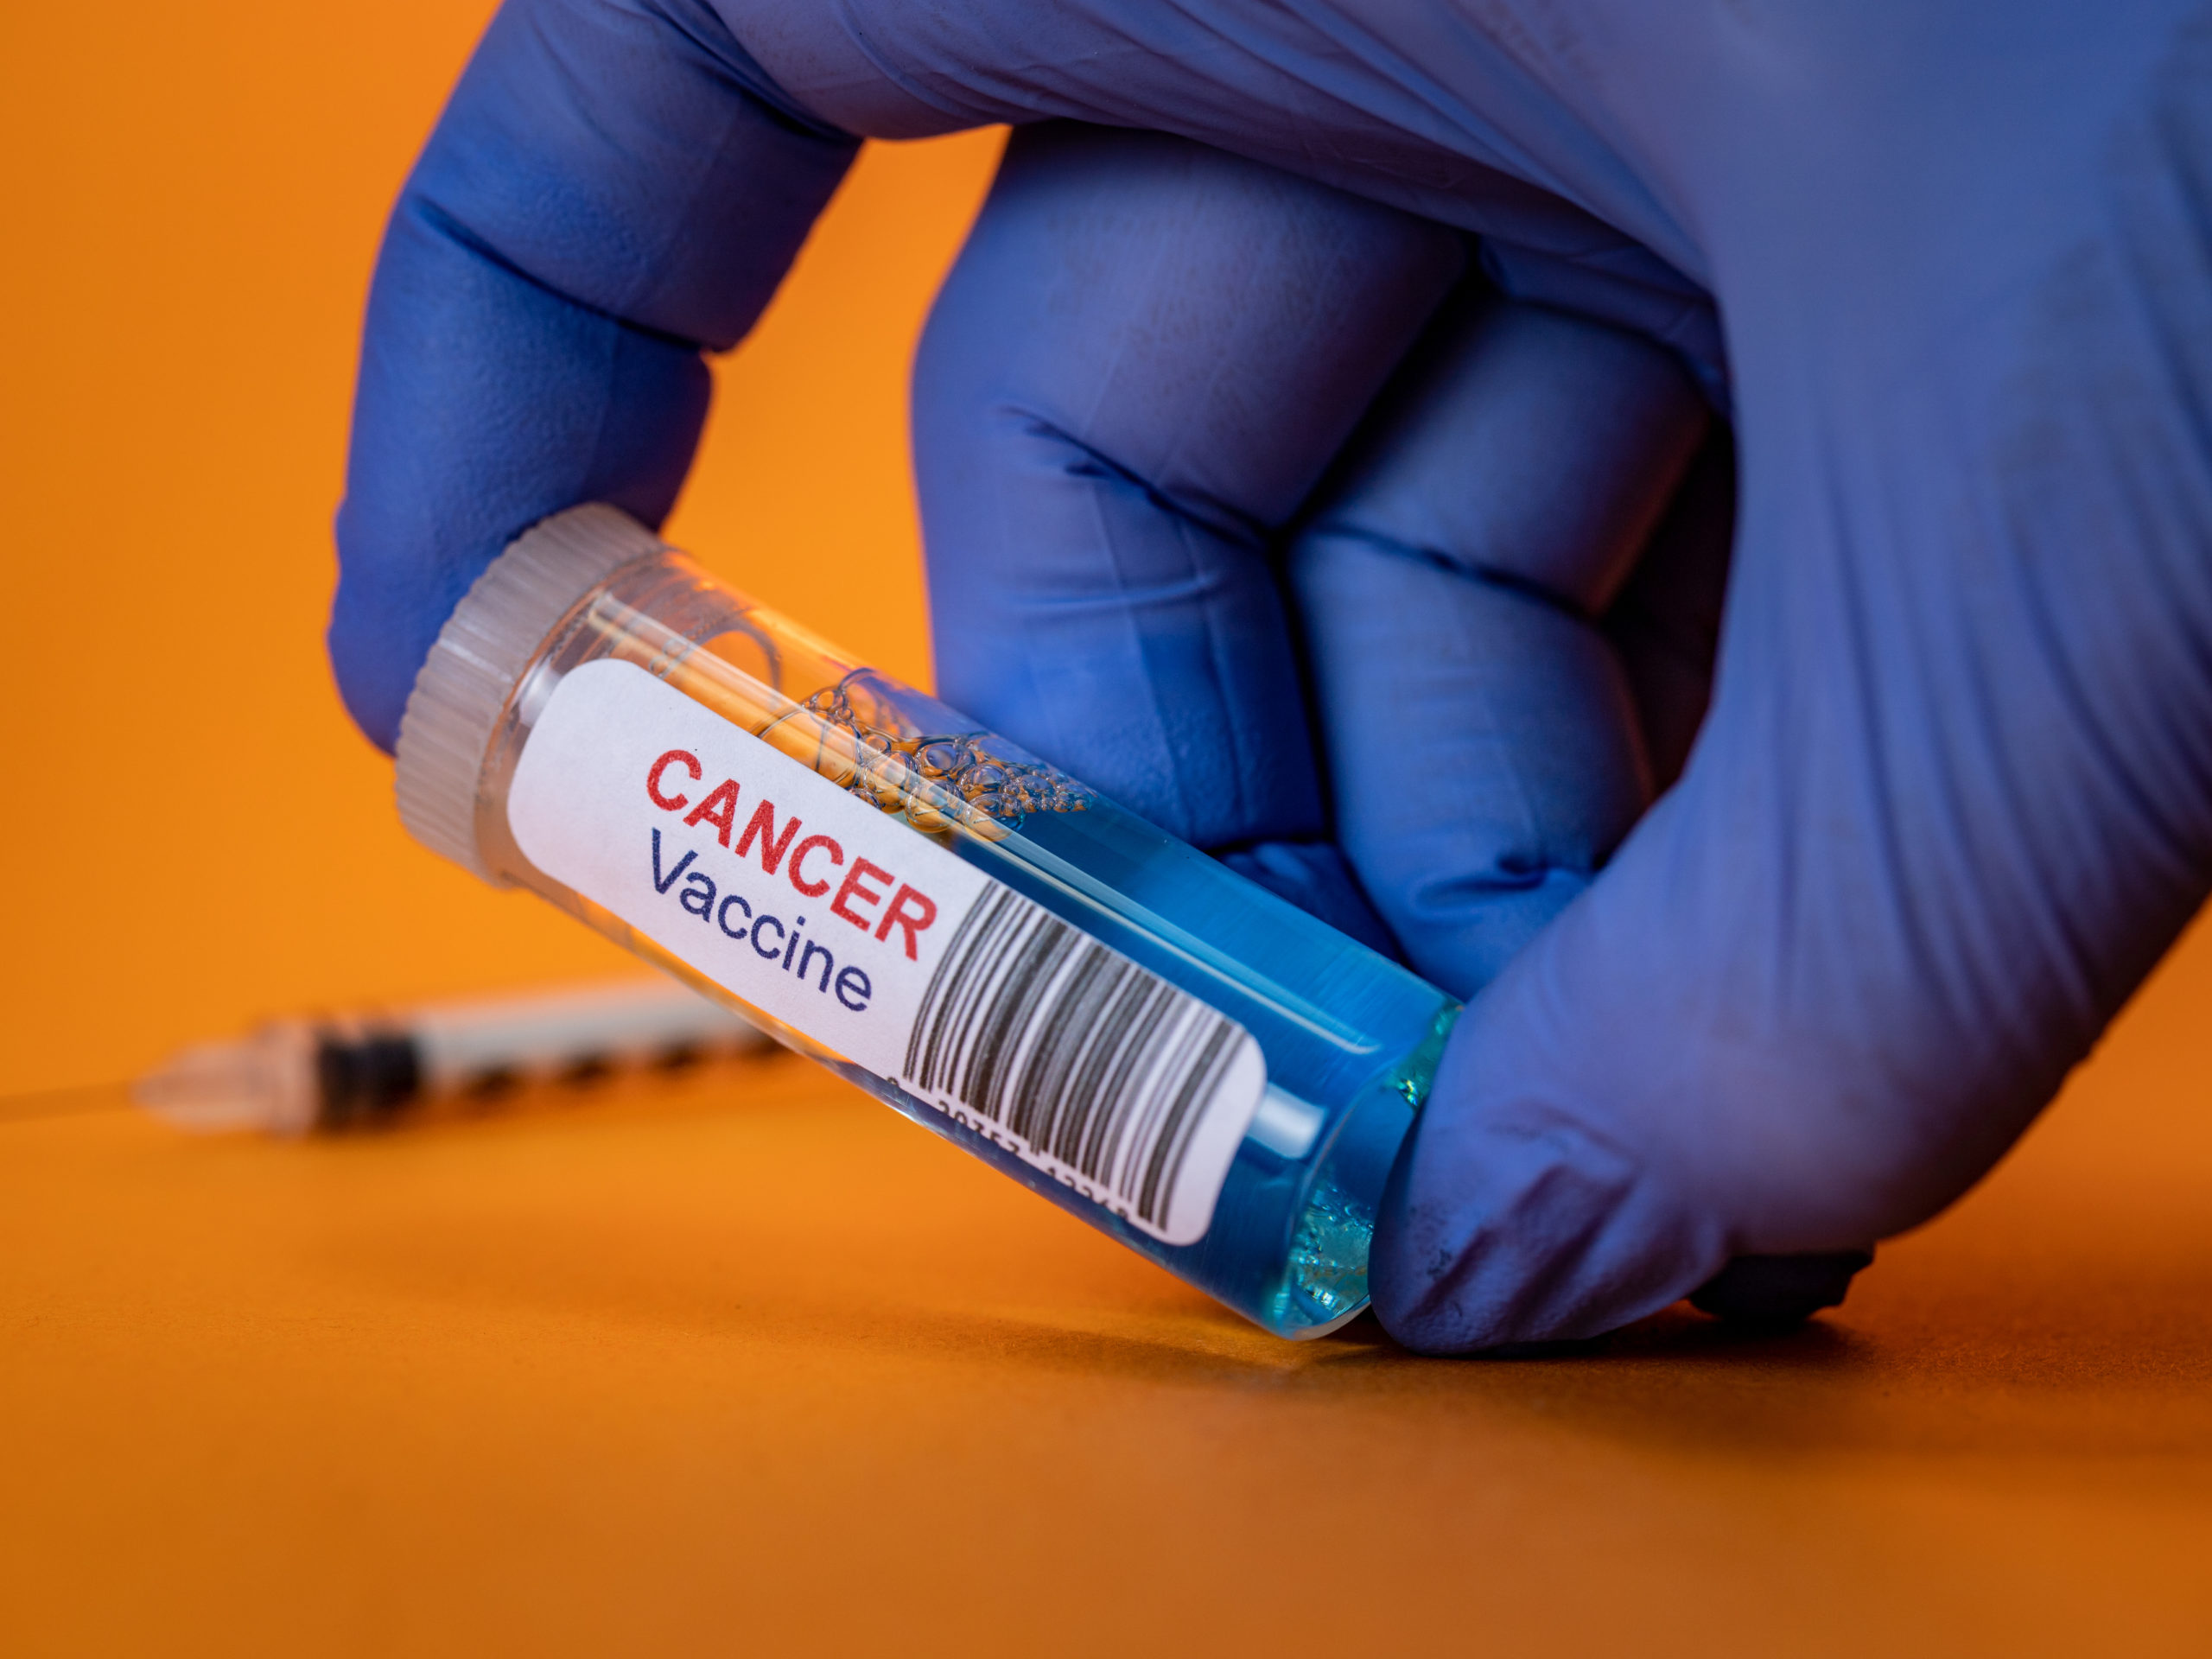 Вакцина от рака отзывы. Ученые вакцина. Борьба с онкологией.